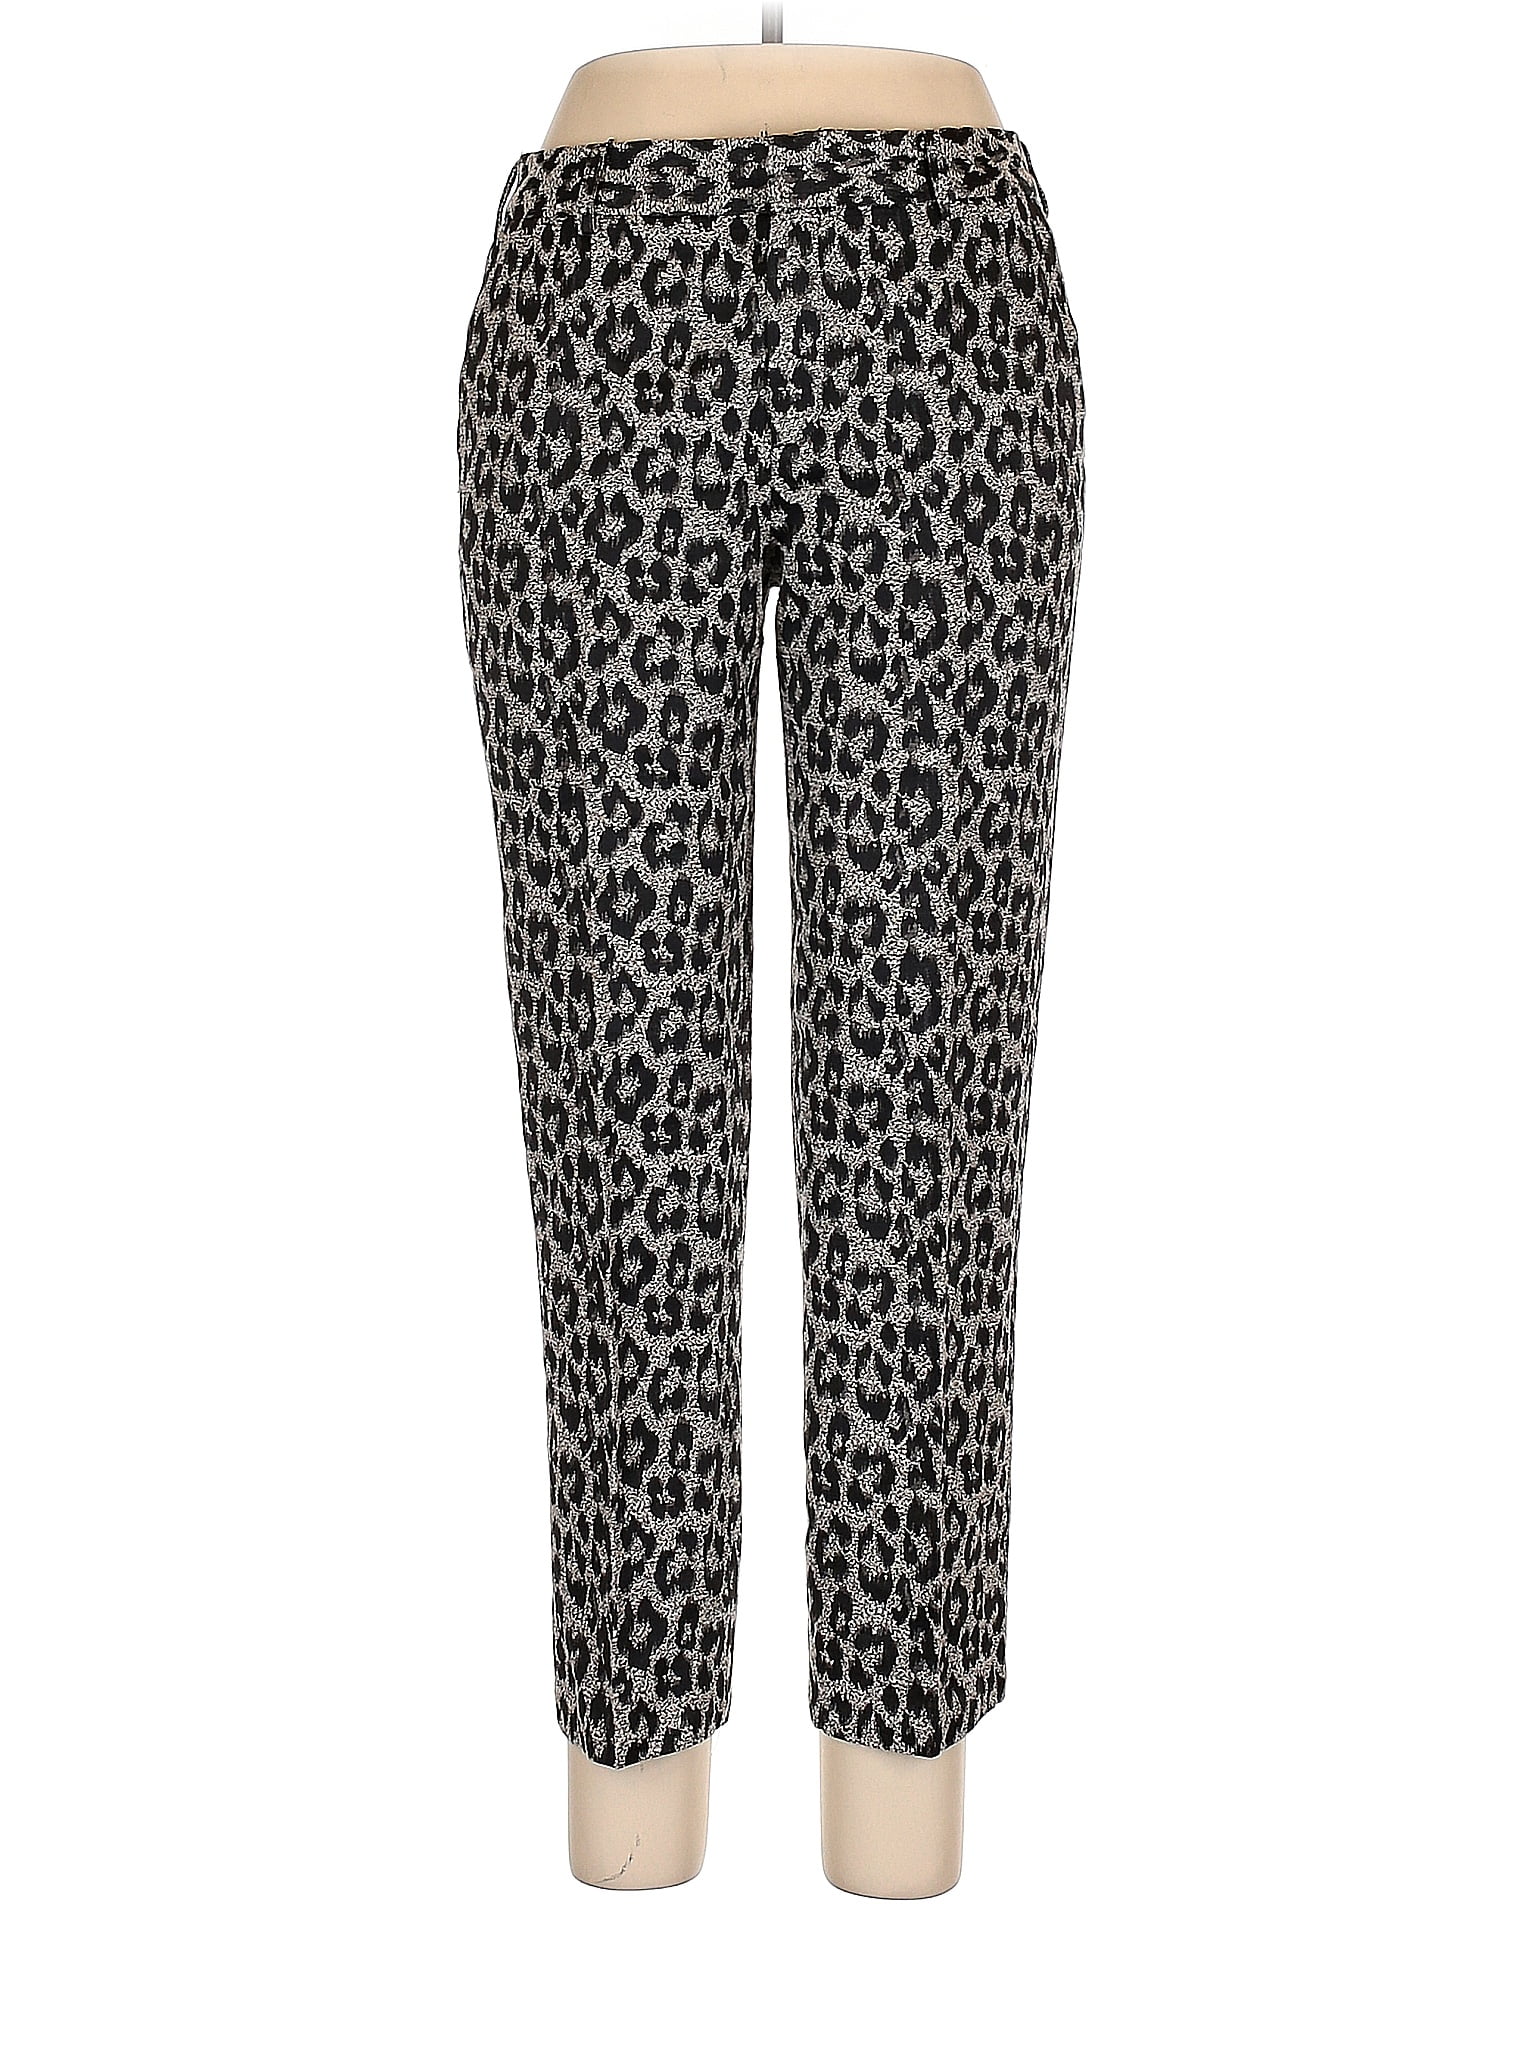 Le Superbe Leopard Print Multi Color Gray Casual Pants Size 10